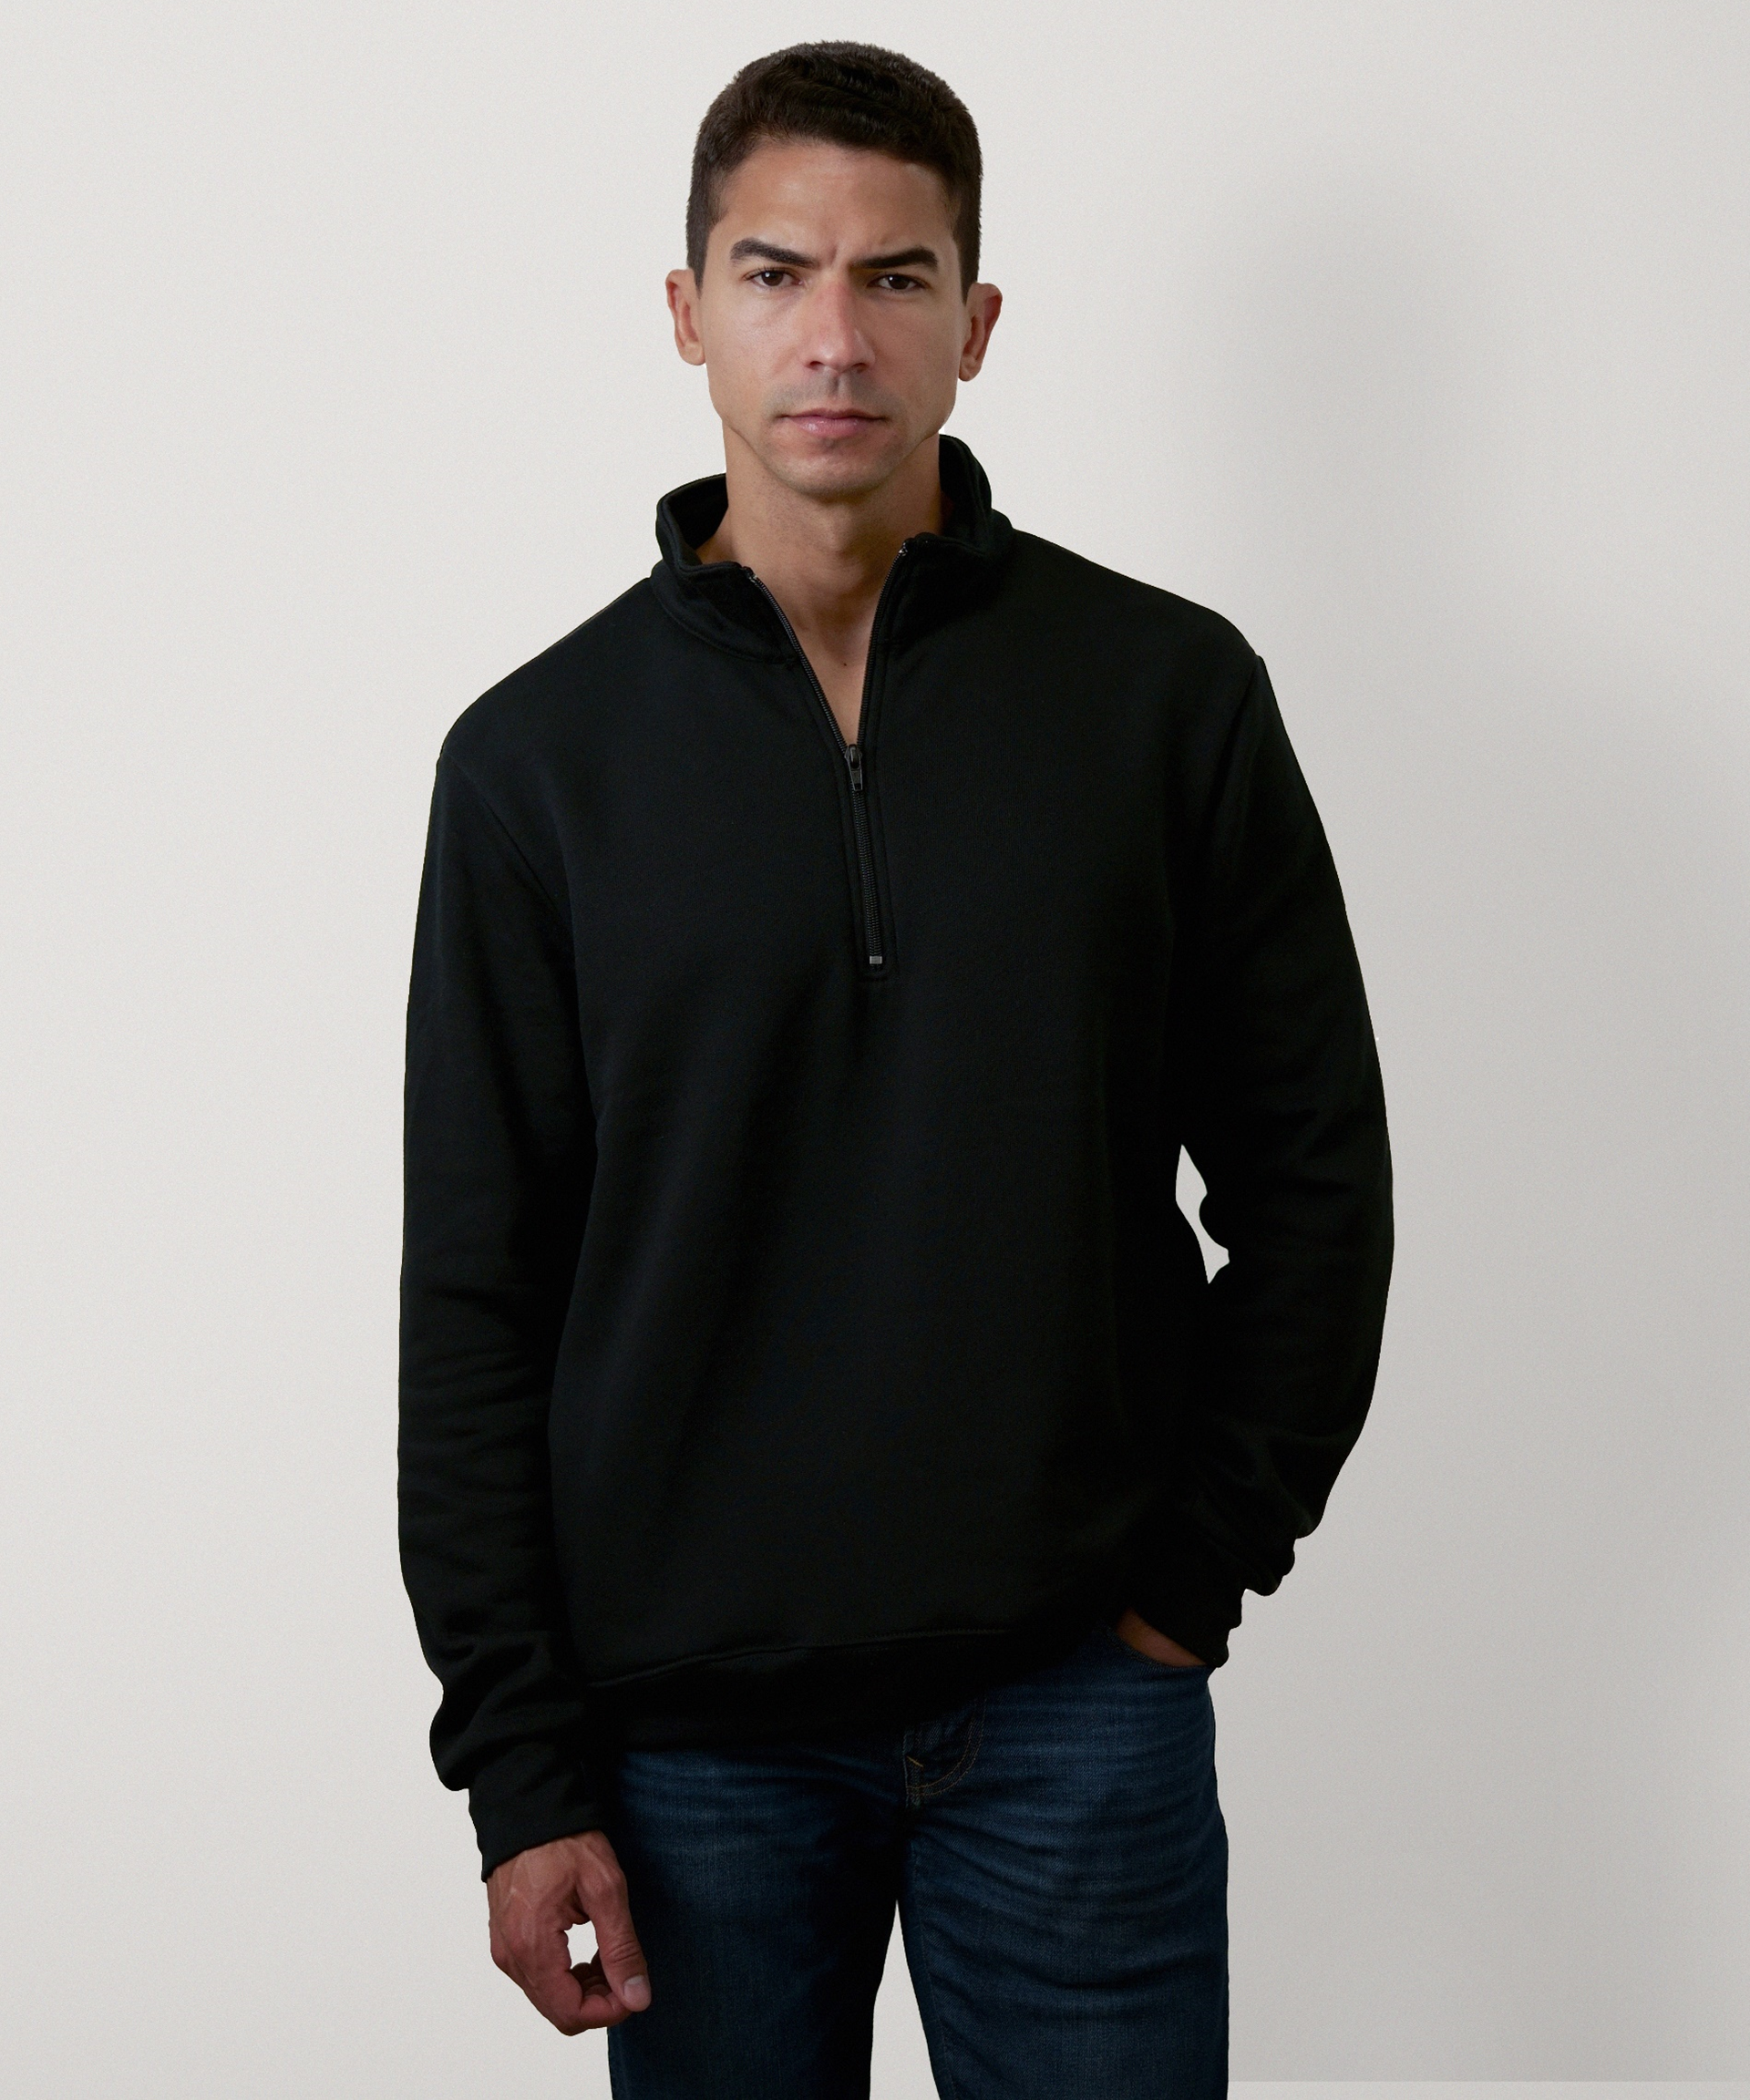 Quarter Zip Sweatshirt for Men (Black)